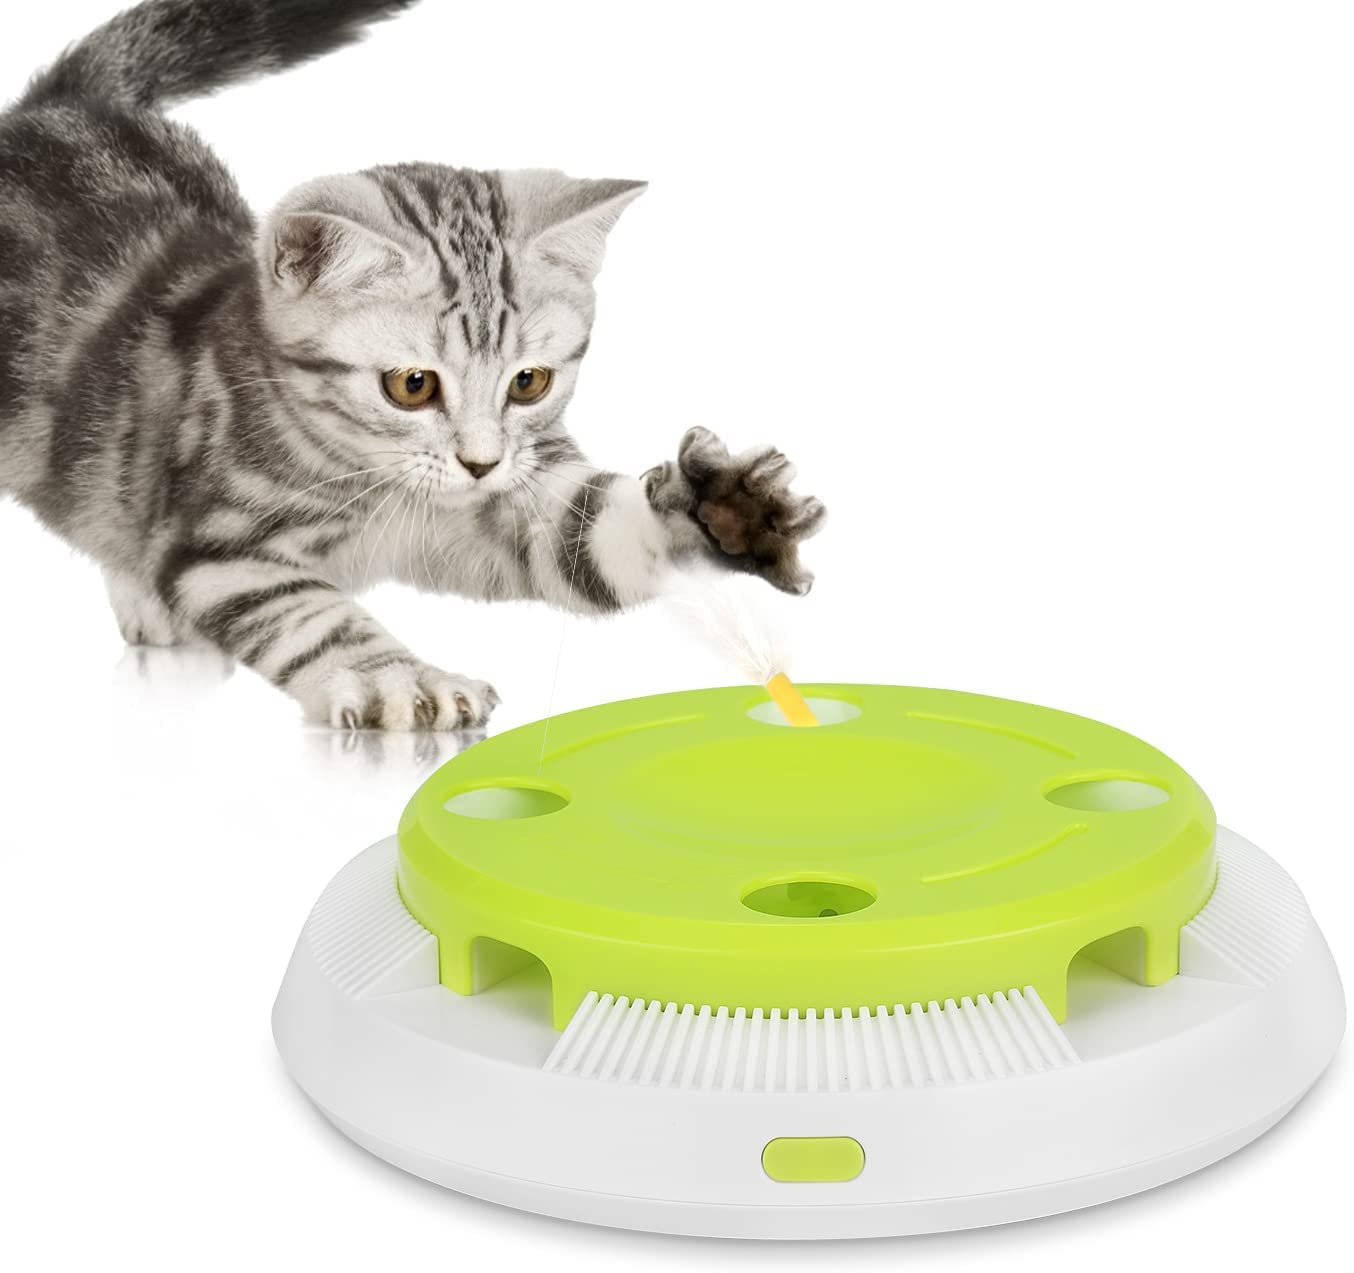 PETTOM - Brinquedo interativo gatos com 8 furos aleatórios automáticos